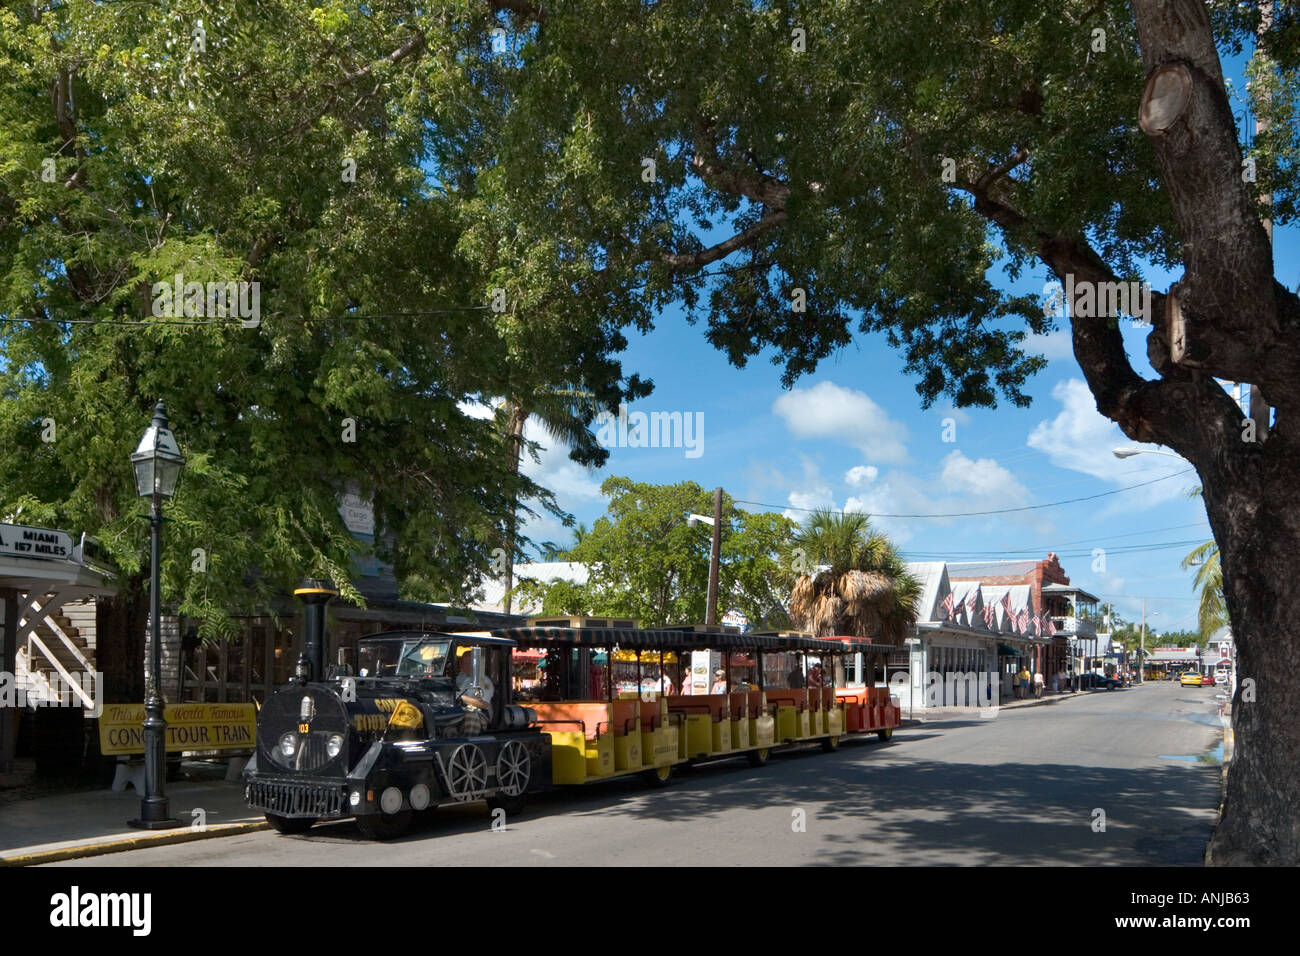 La visite de conques, de la vieille ville historique de Key West, Floride, USA Banque D'Images